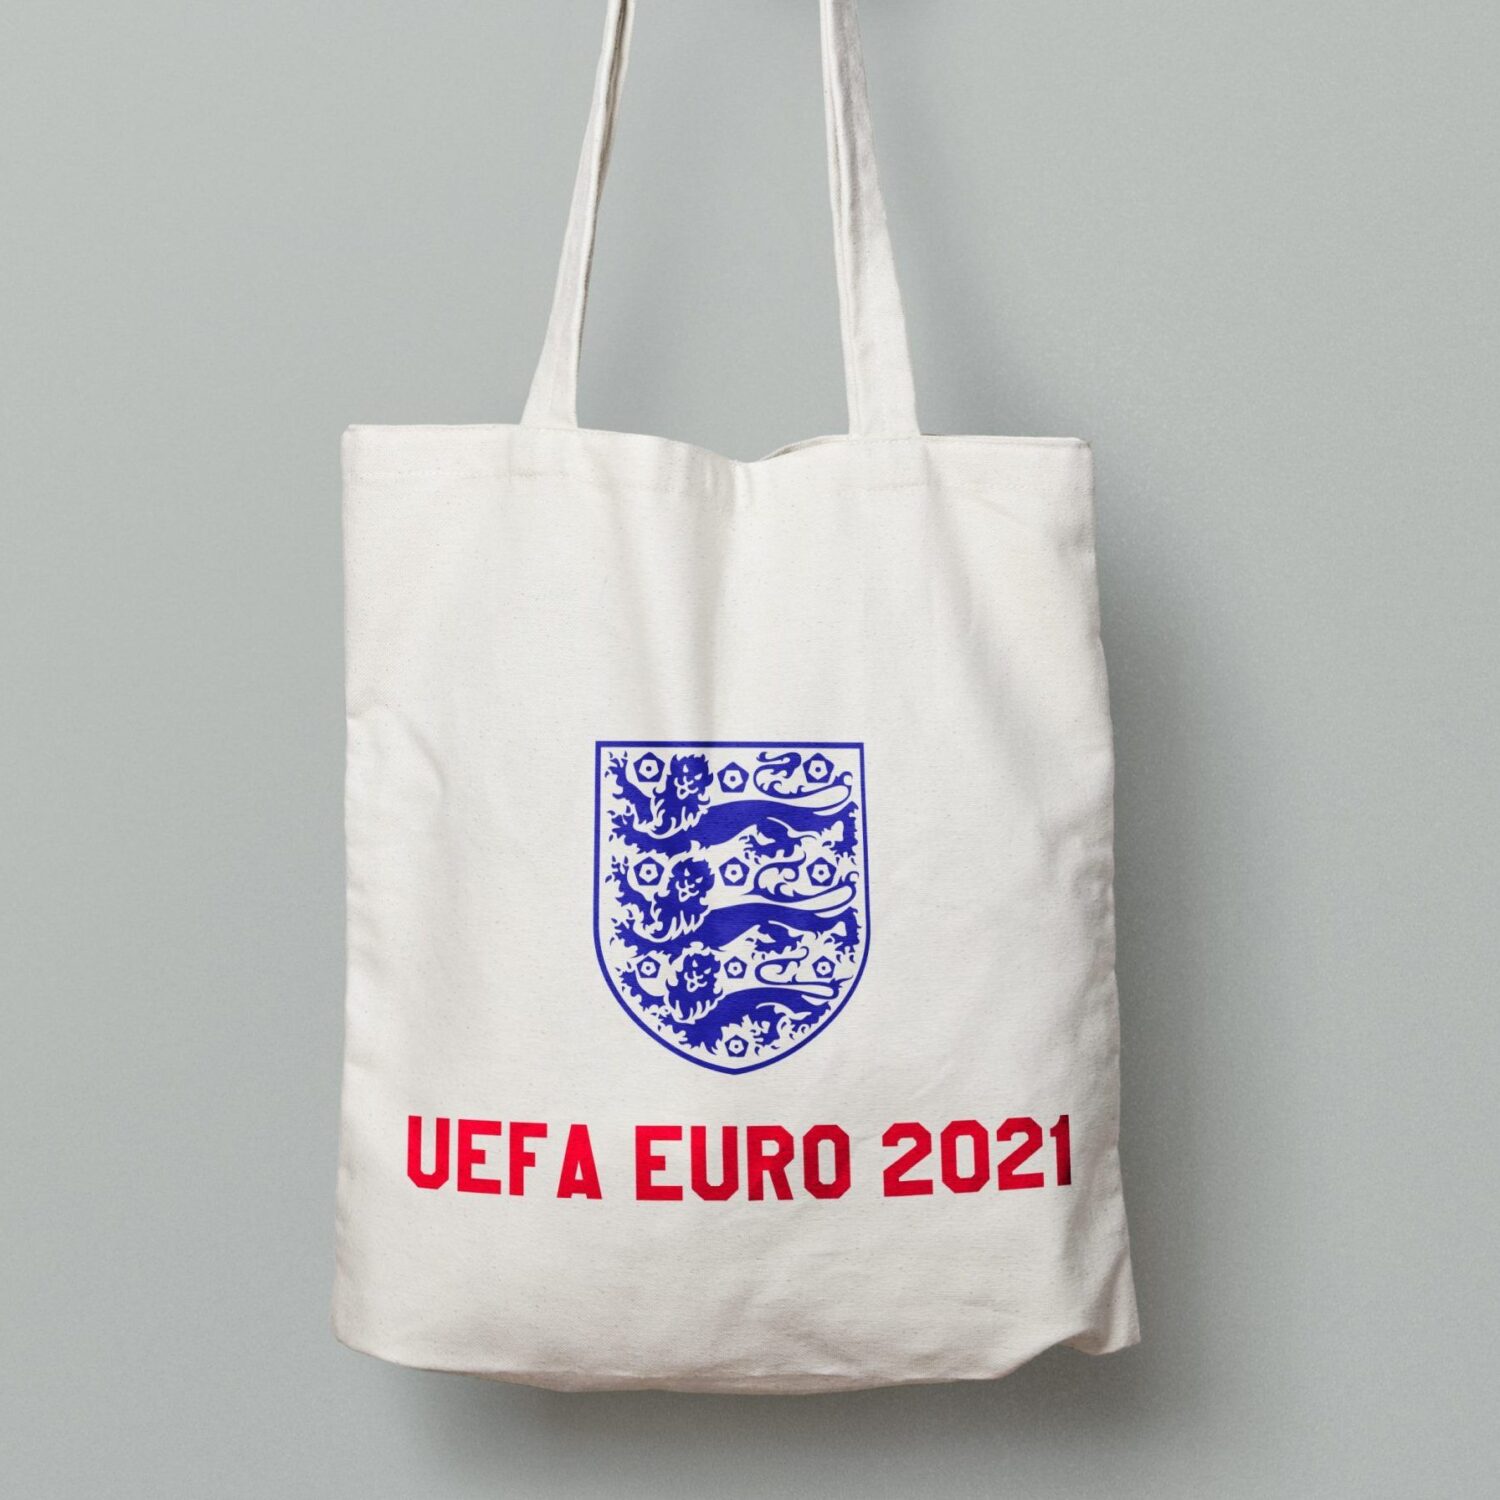 UEFA Euro 2021 Tote